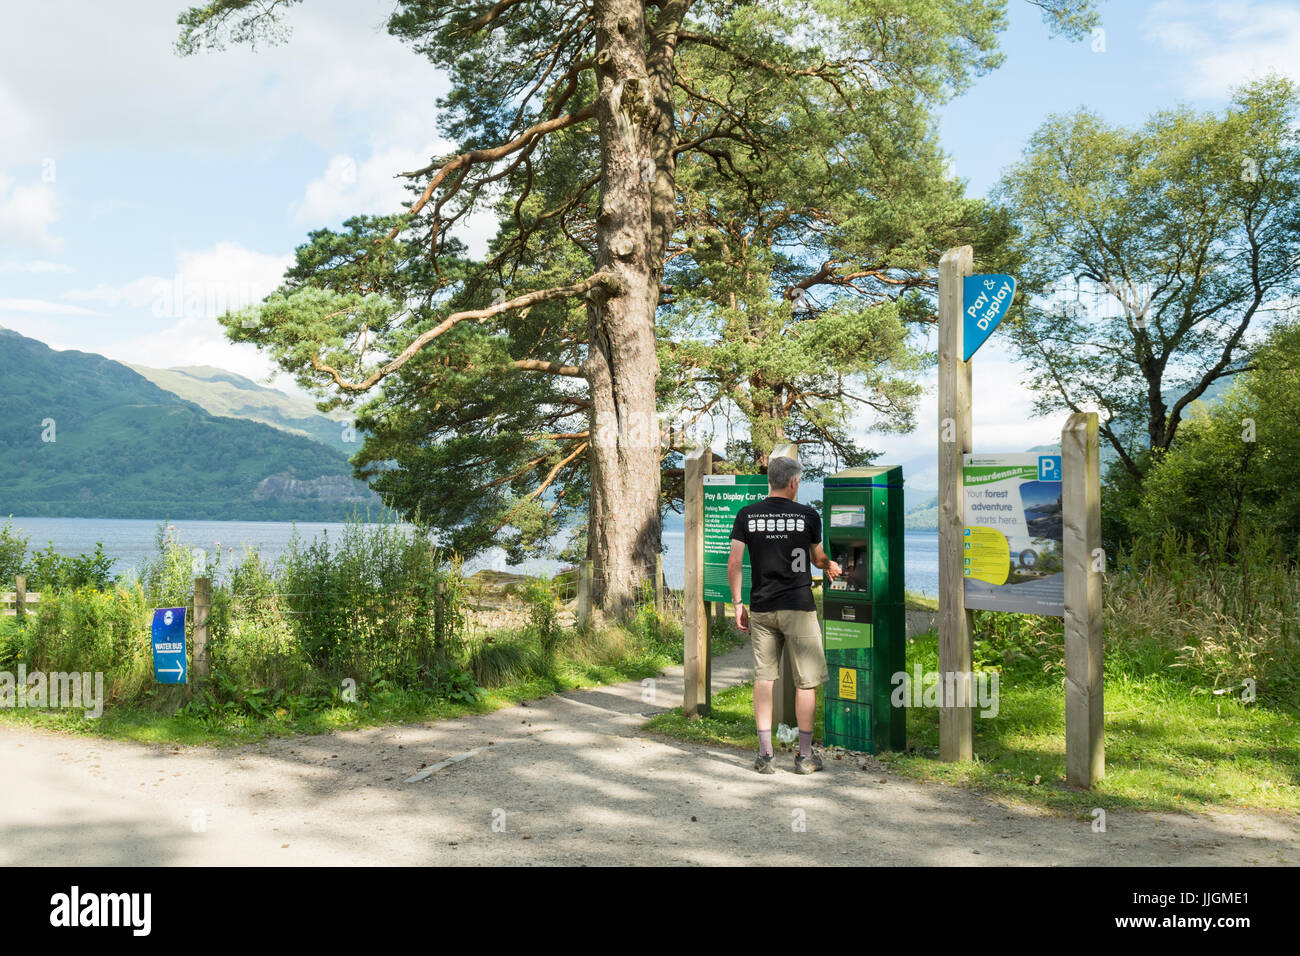 Uomo che paga a pagamento e mostra parcheggio a Rowardennan, Loch Lomond e Trossachs National Park, Scozia, Regno Unito Foto Stock